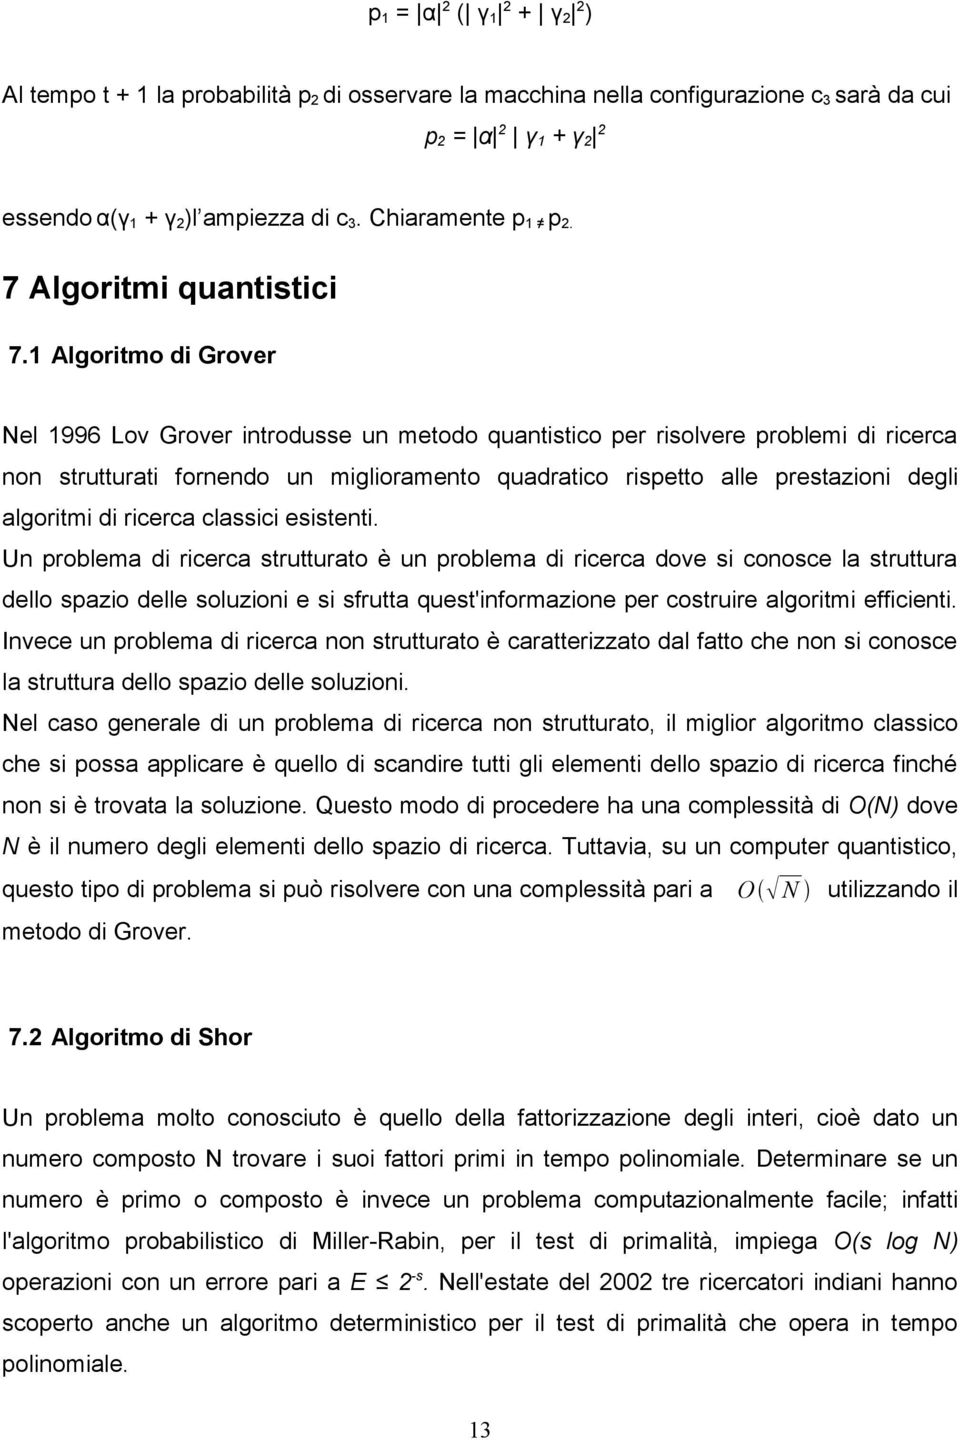 1 Algoritmo di Grover Nel 1996 Lov Grover introdusse un metodo quantistico per risolvere problemi di ricerca non strutturati fornendo un miglioramento quadratico rispetto alle prestazioni degli